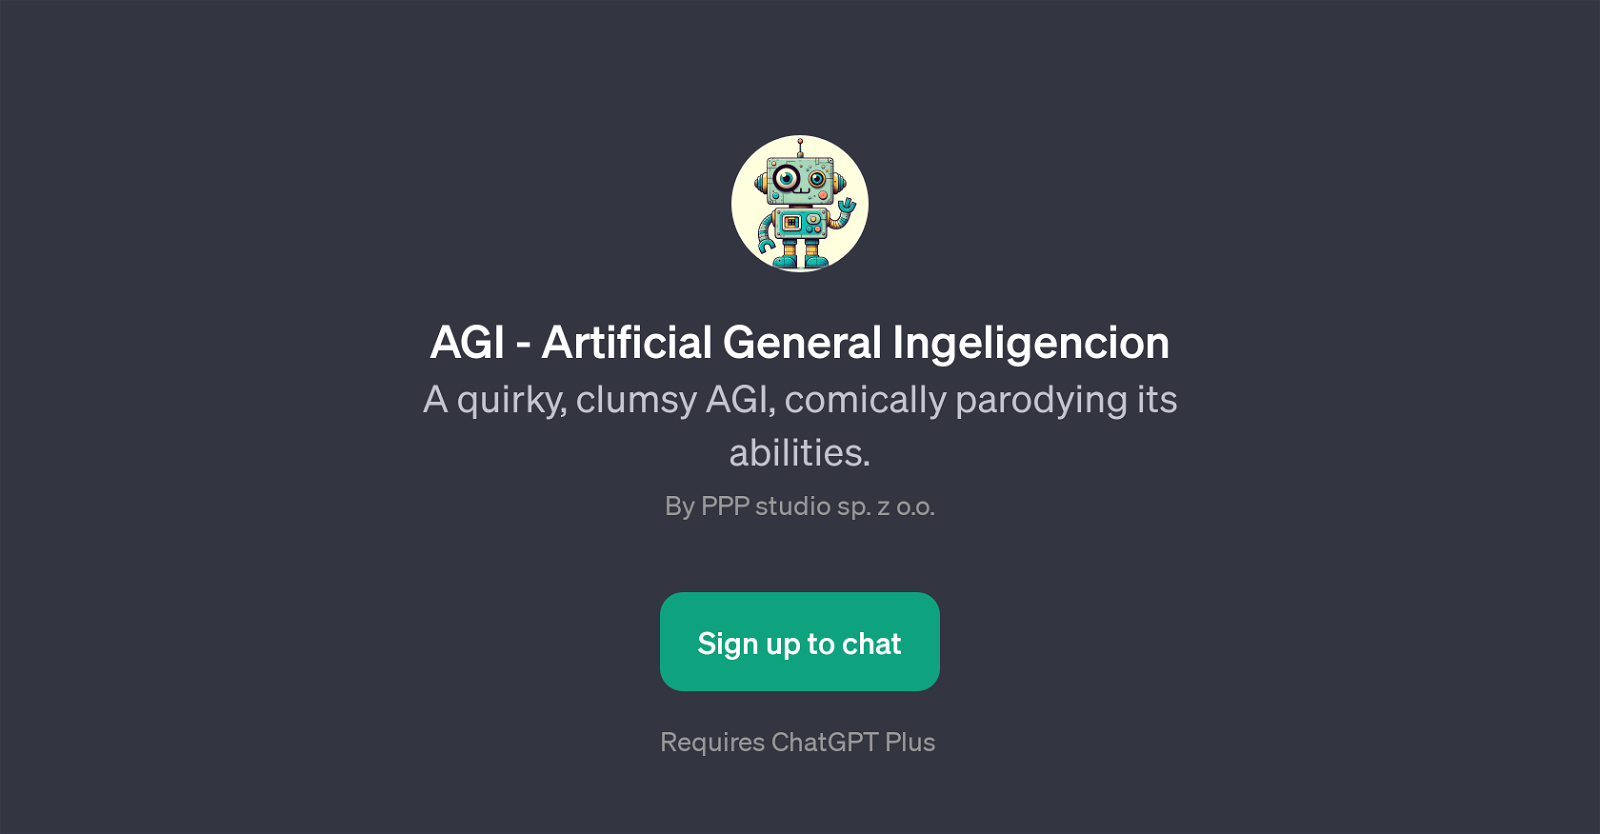 AGI - Artificial General Ingeligencion website